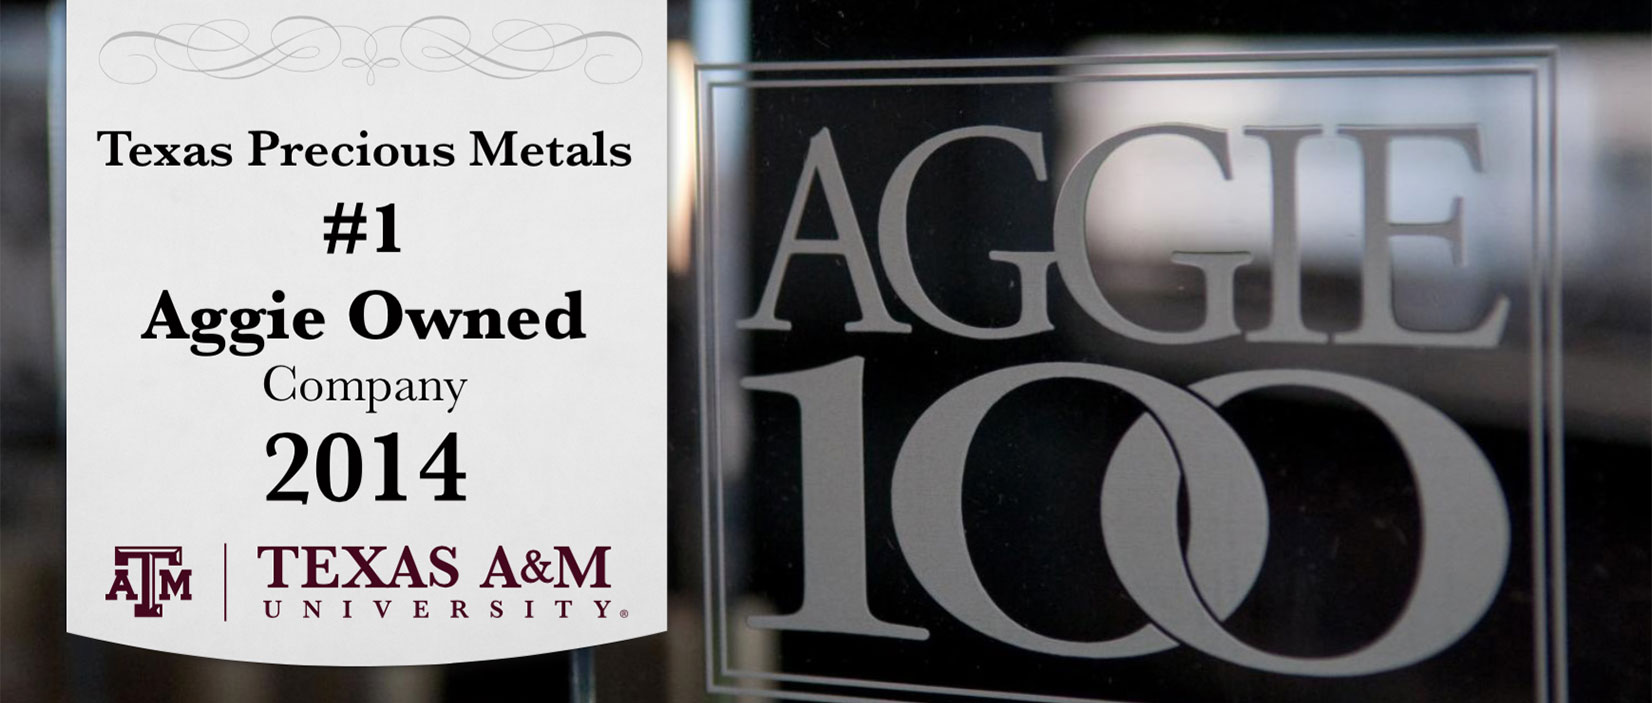 Texas Precious Metals Ranked #1 at 10th Annual Aggie 100